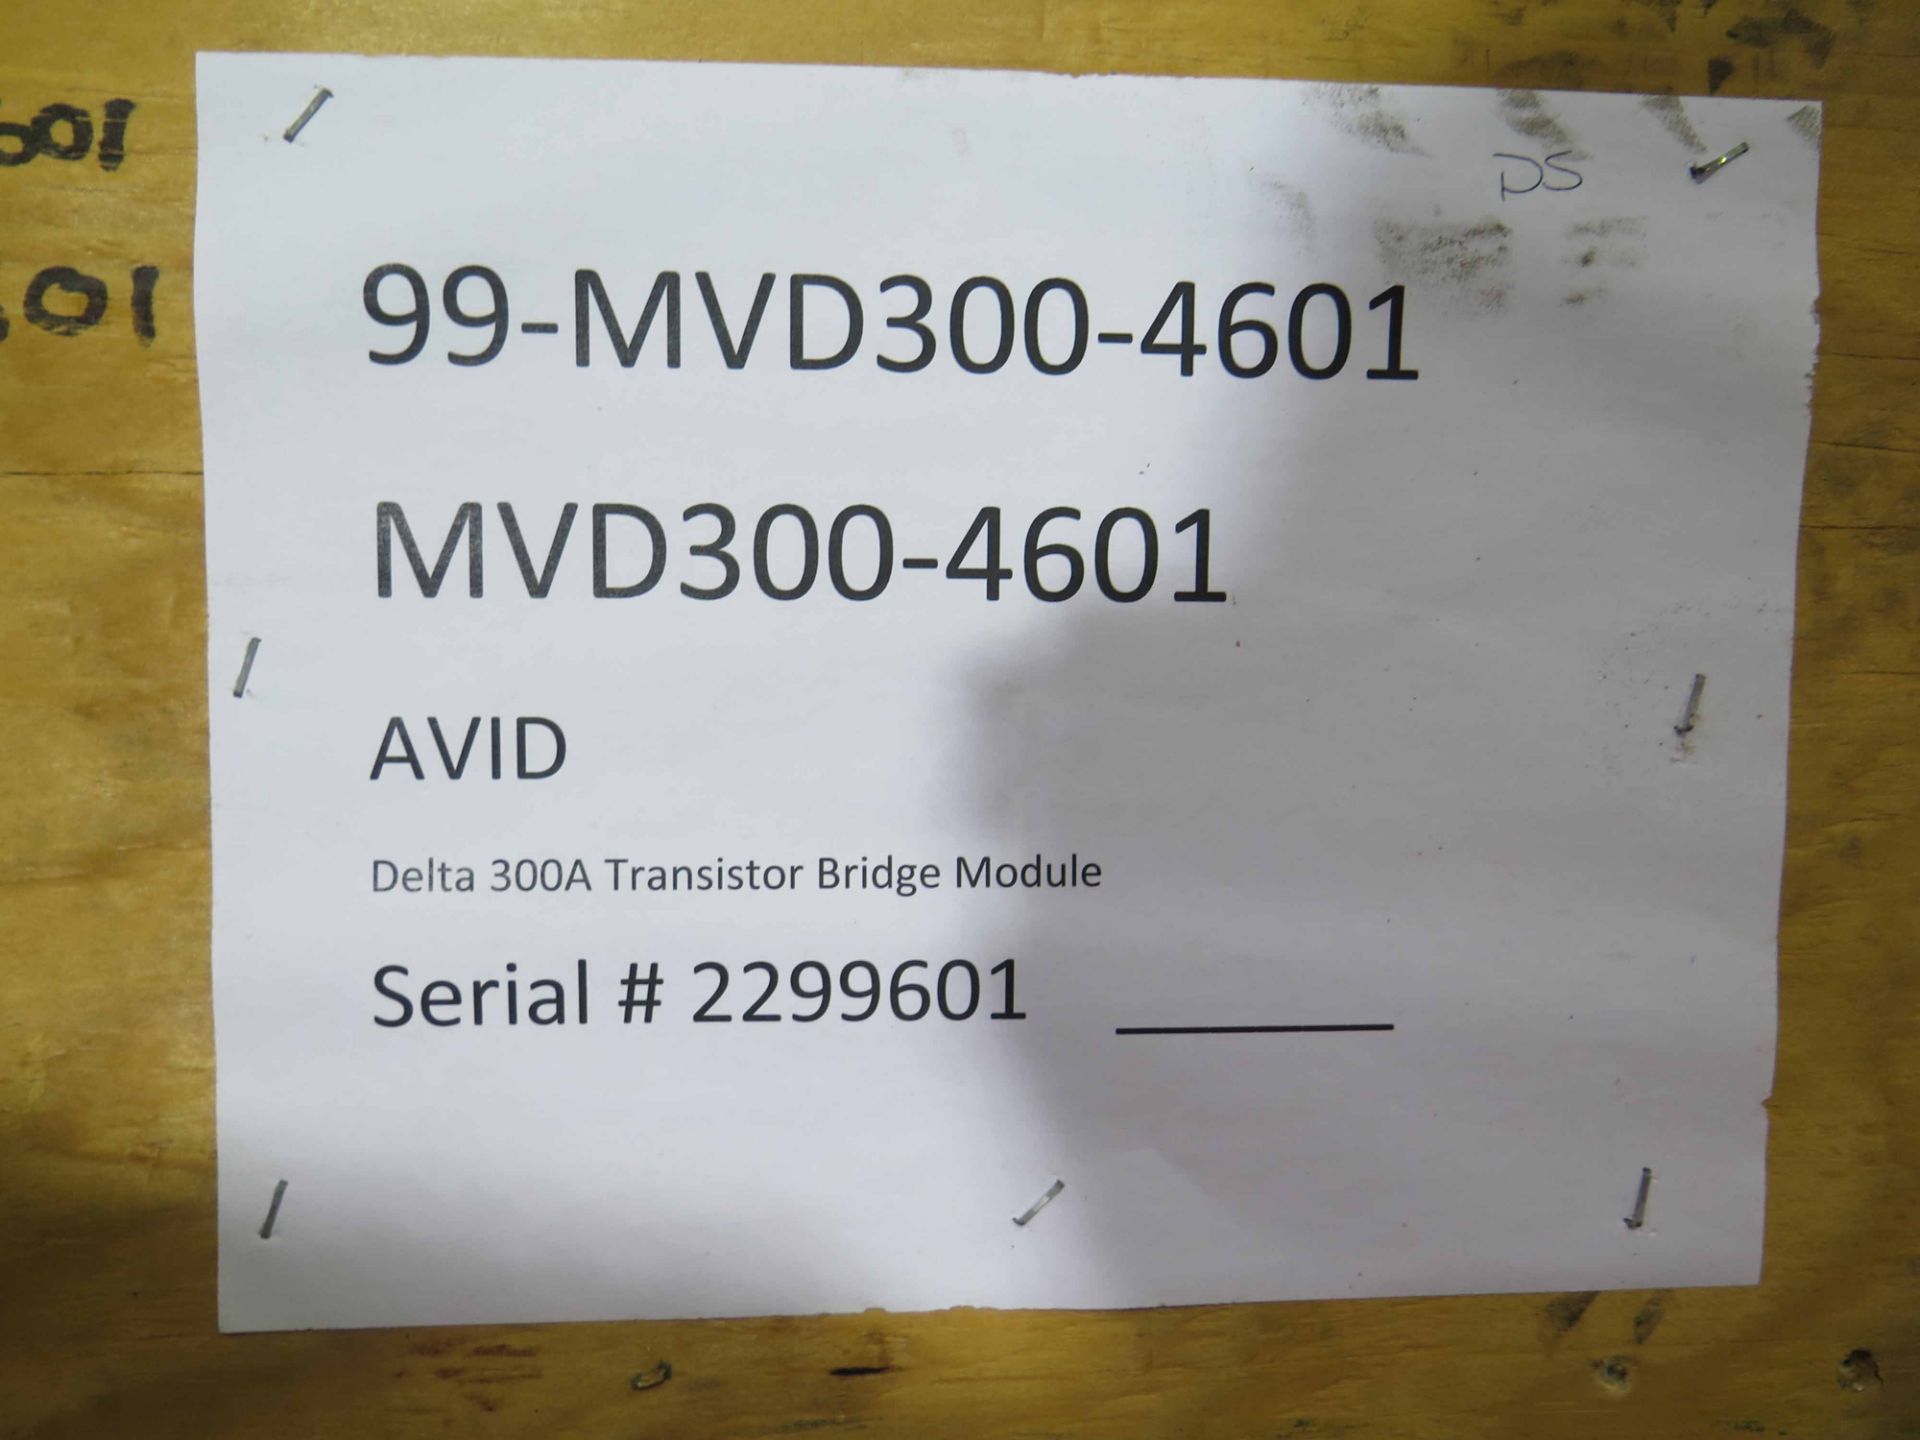 RECTIFIER, AVID MDL. MVD300-4601, delta 300A, transistor bridge M, S/N 229301 - Image 2 of 2